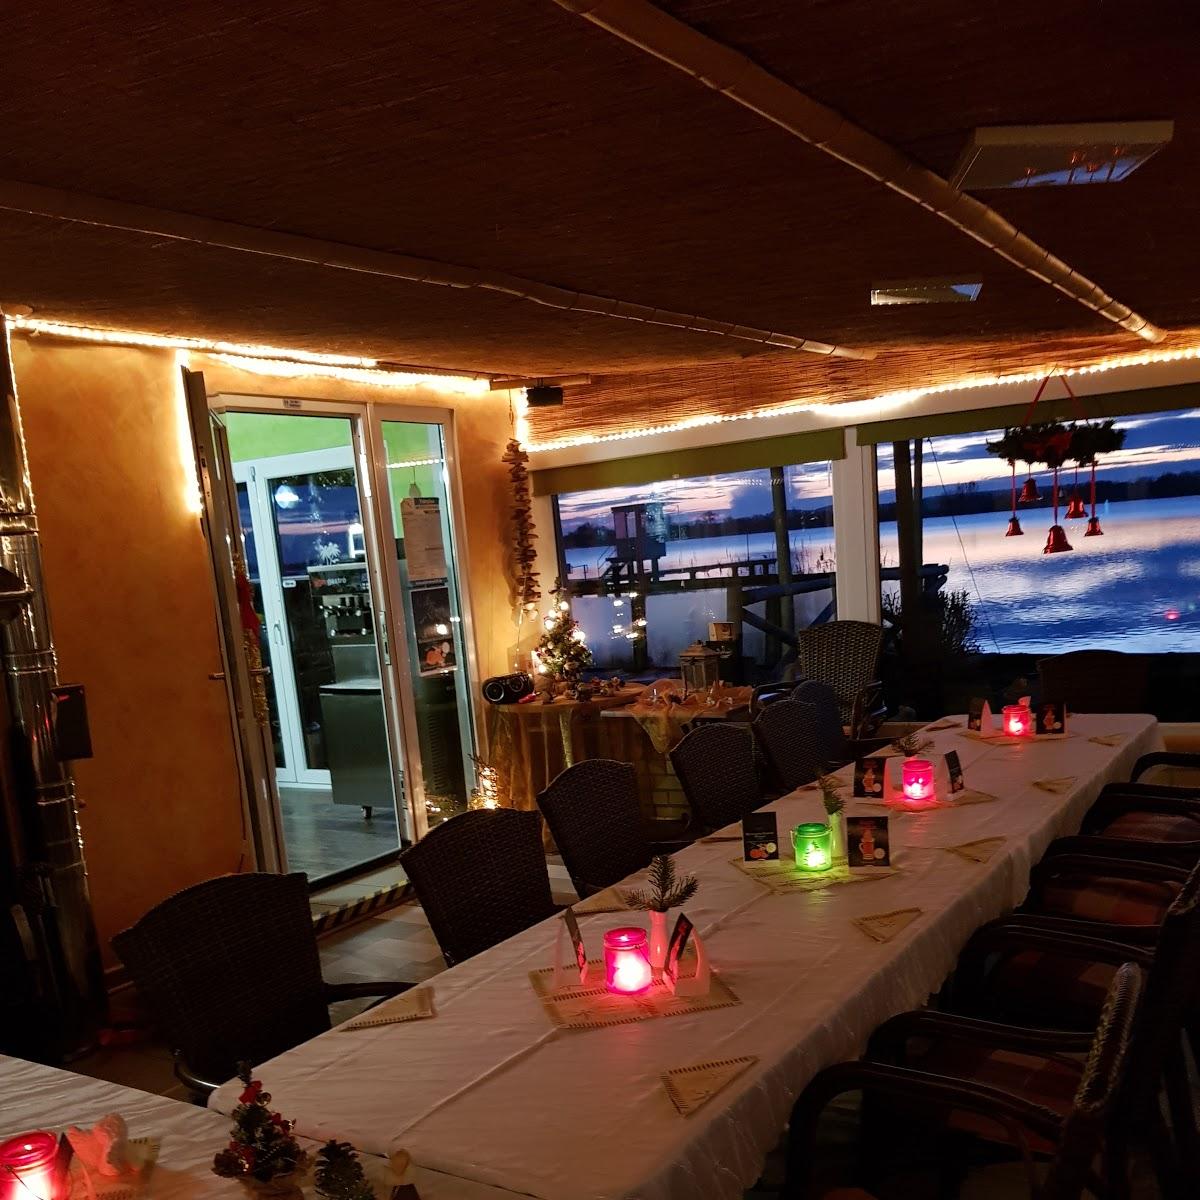 Restaurant "Strandcafe Balu" in Prenzlau